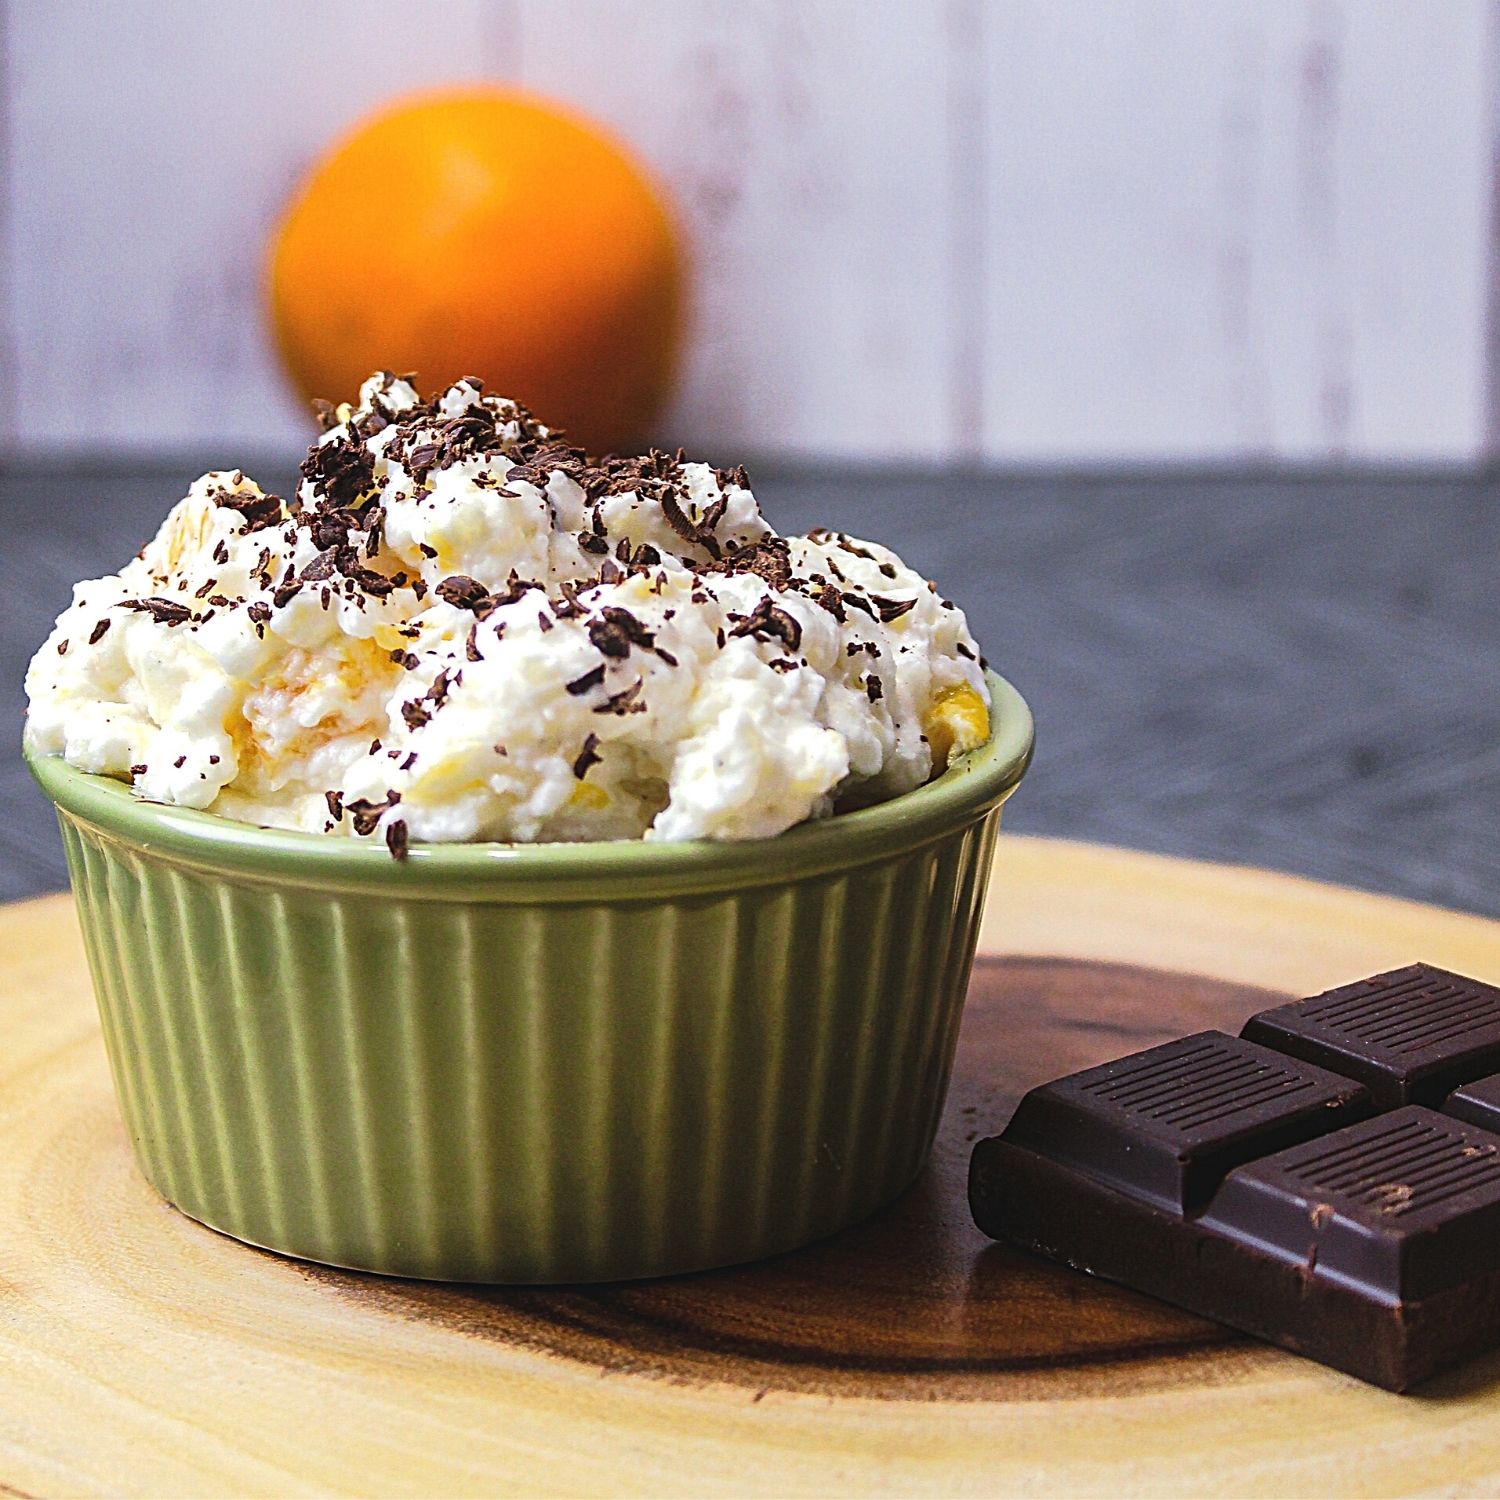 Appelsinris - Norwegian Rice Pudding with Orange & Chocolate